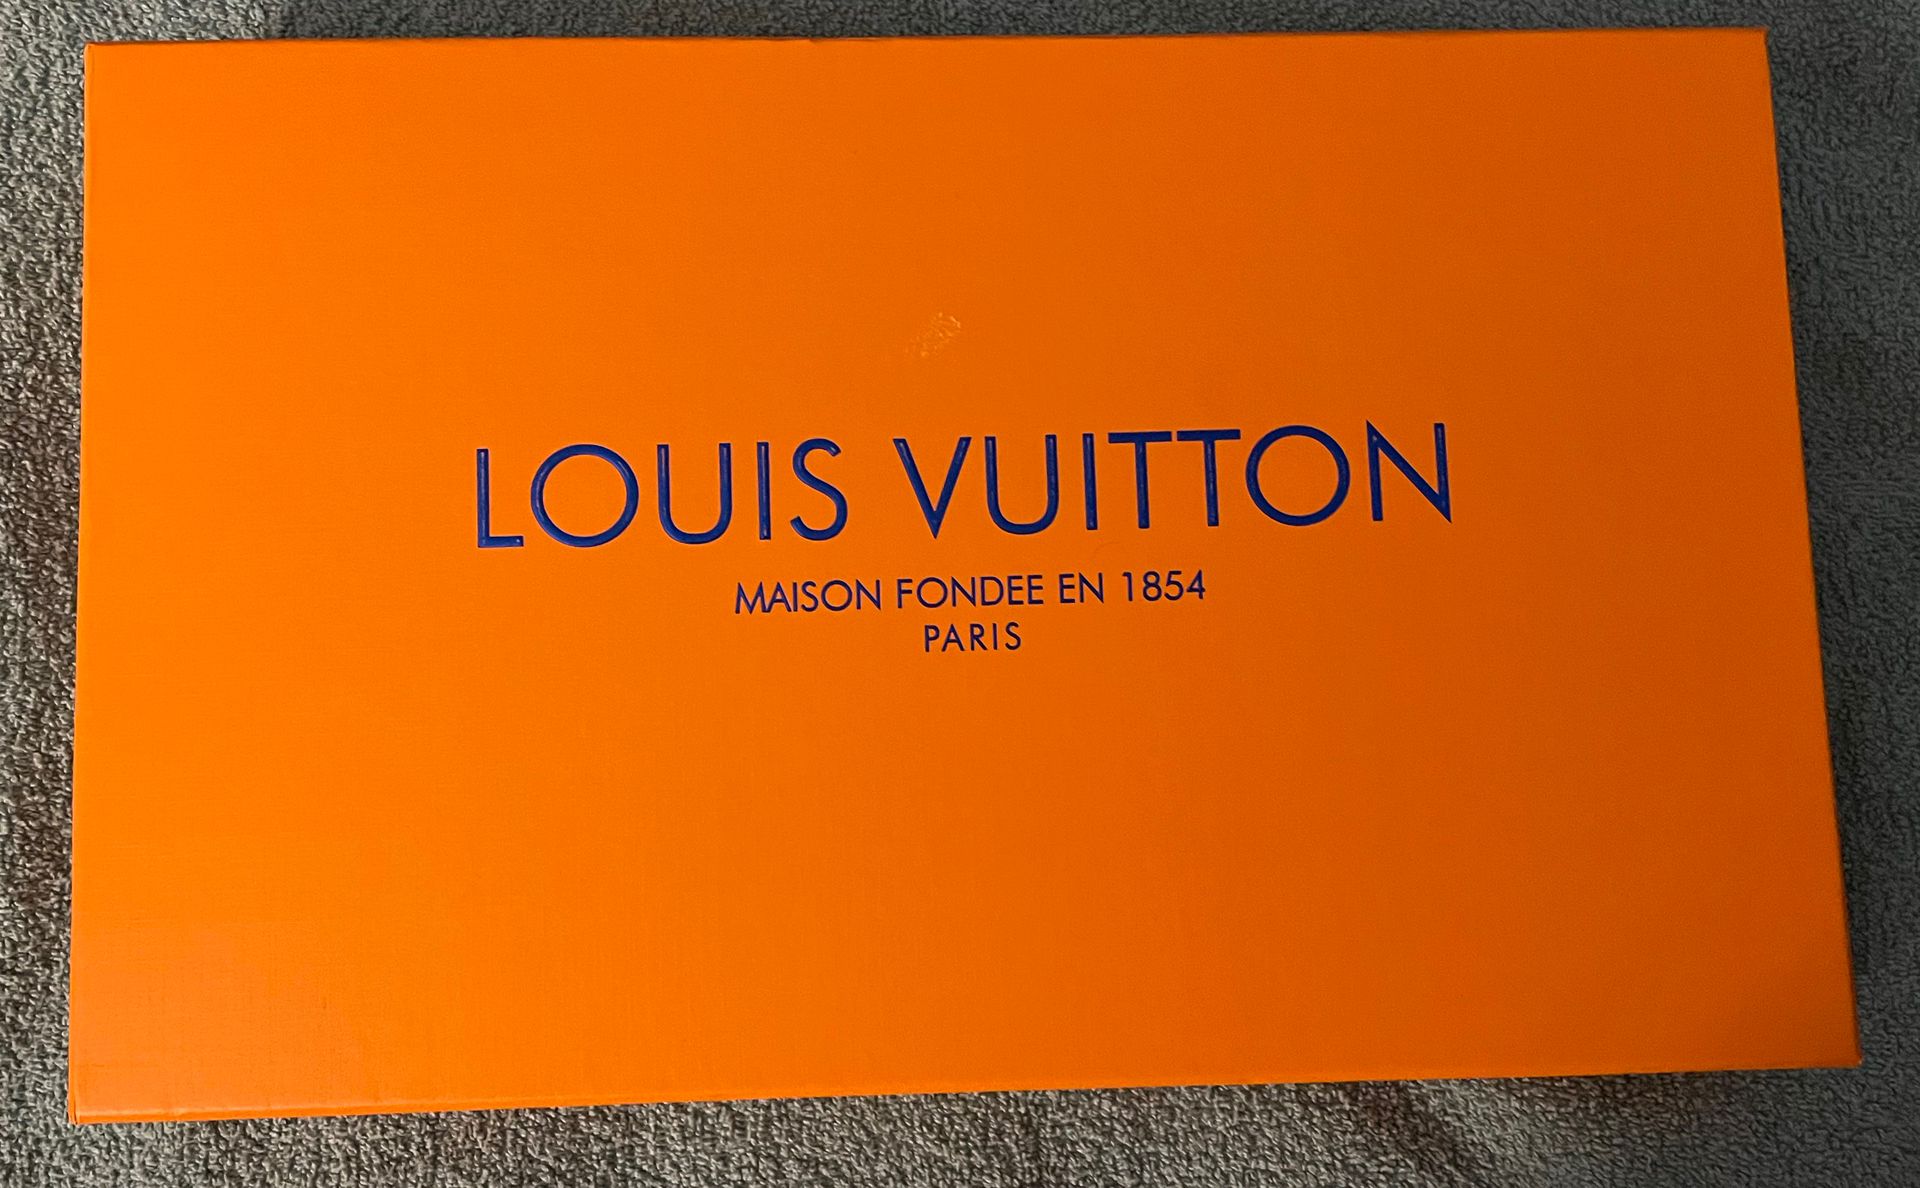 Louis Vuitton LV Monogram Silk Cashmere Brown Dark Blue Scarf Wrap 74” x  27.5” for Sale in New York, New York - OfferUp